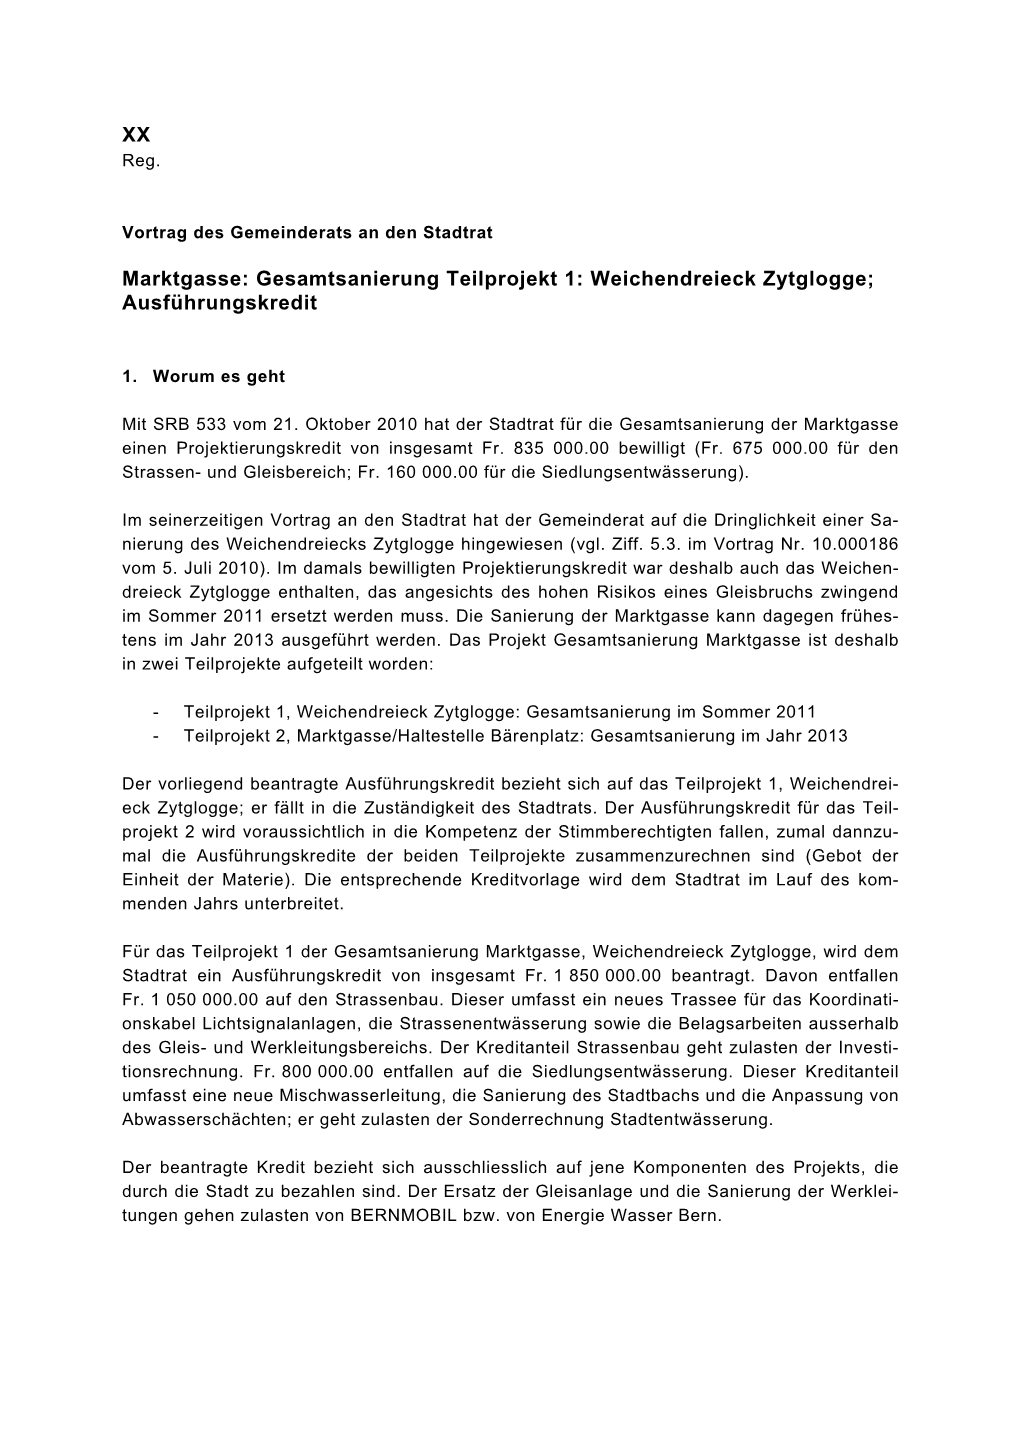 Gesamtsanierung Teilprojekt 1: Weichendreieck Zytglogge; Ausführungskredit